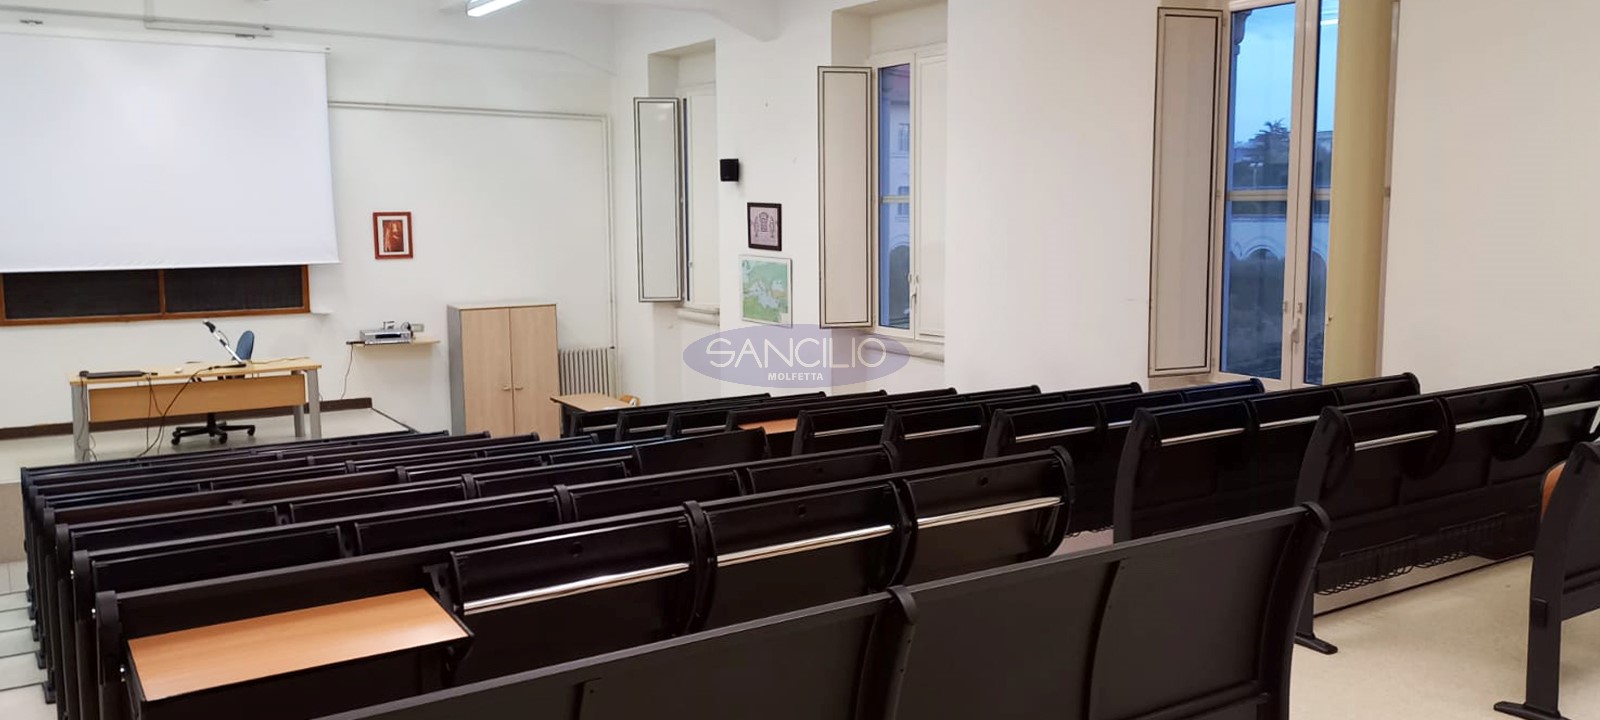 sancilio evotech molfetta - aula università istituto teologico pugliese banchi dispositivi digitali multimediali scrivania sedia cattedra